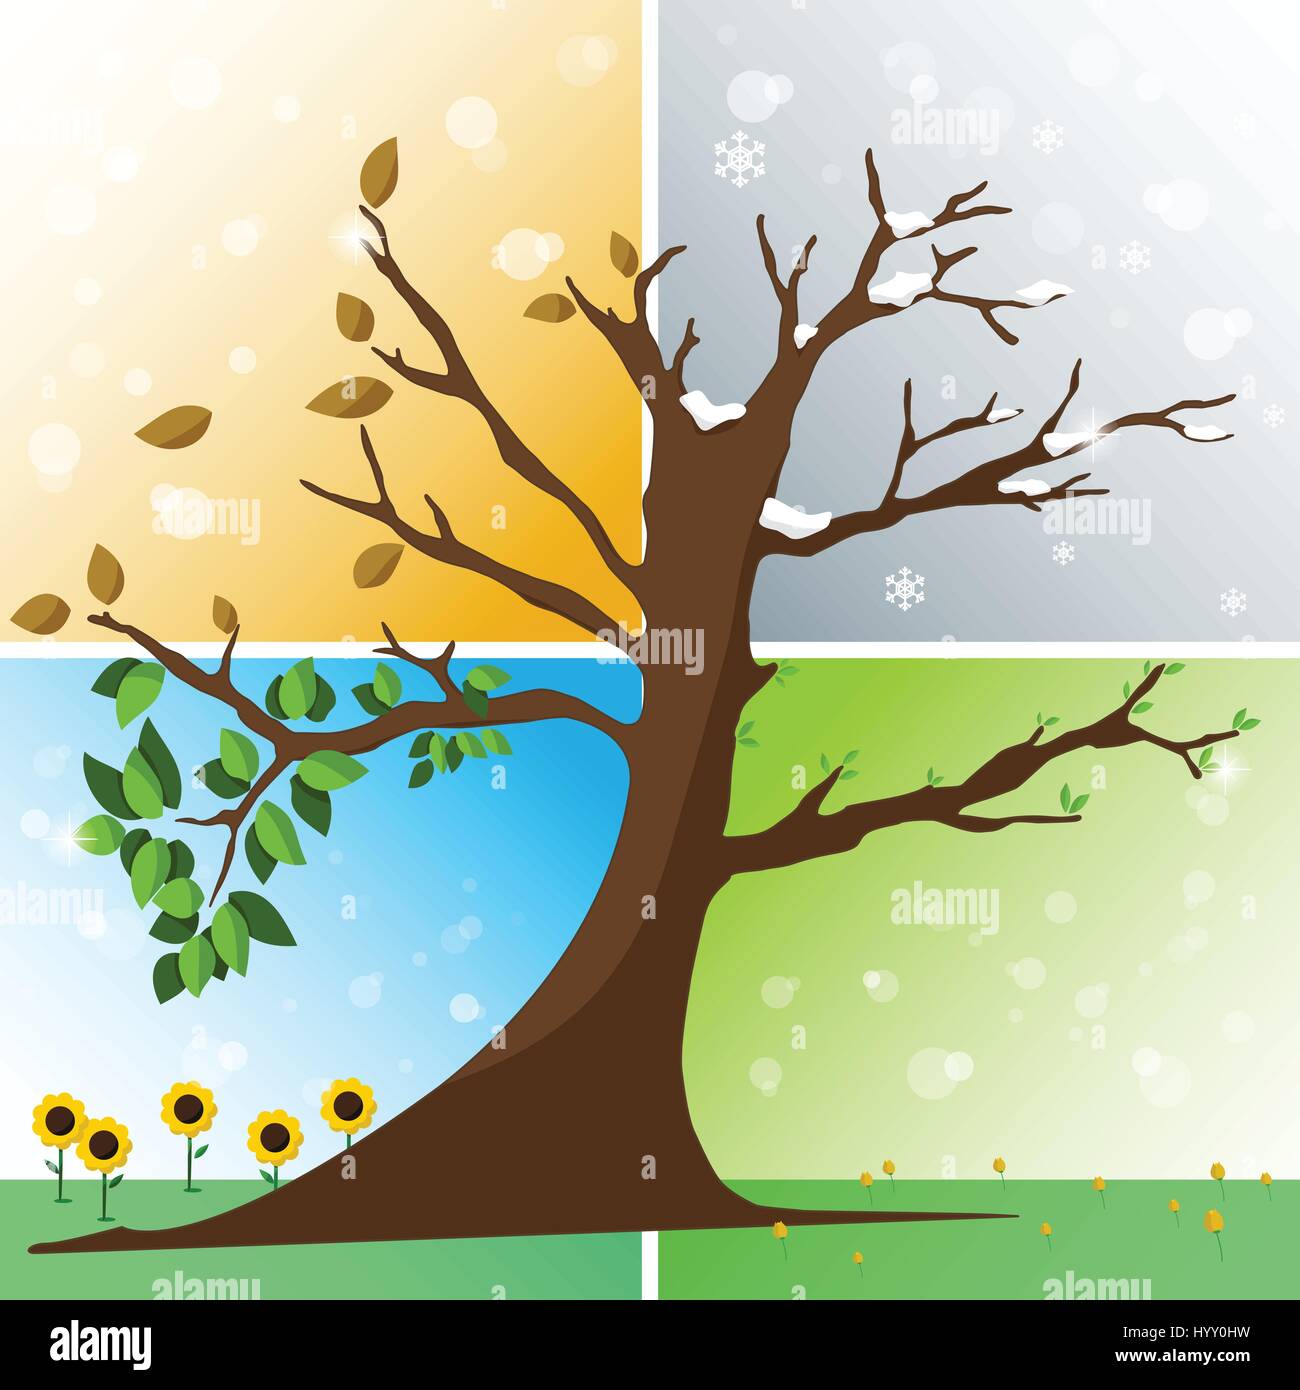 Vier Jahreszeiten in einem Baum - Frühling, Sommer, Herbst, Winter-Vektor-illustration Stock Vektor